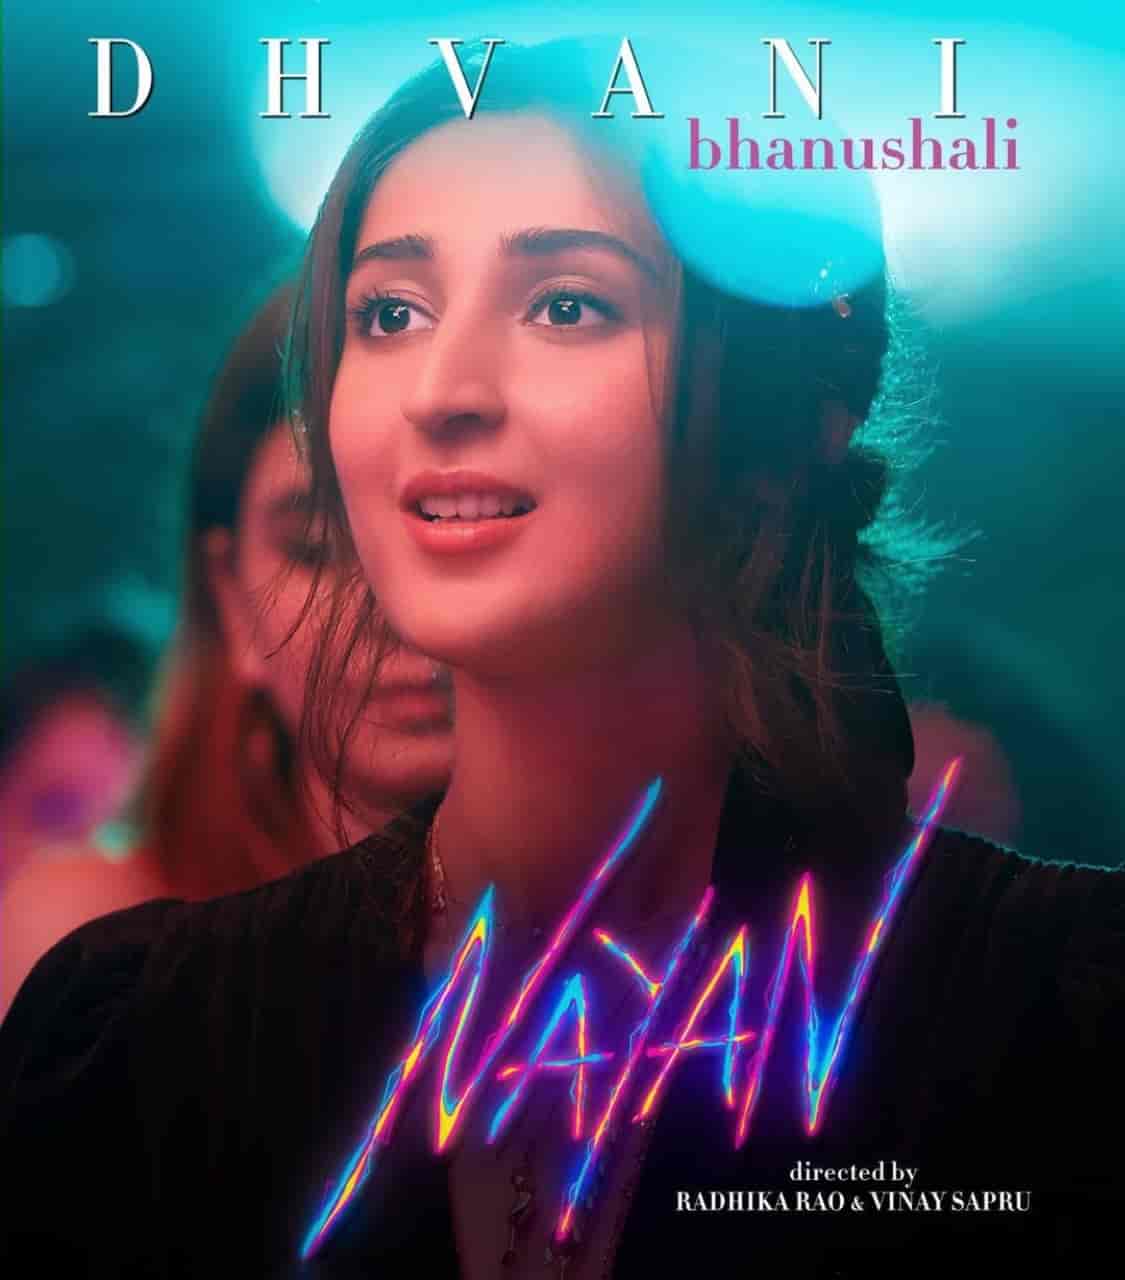 Nayan cute hindi song image features Dhvani Bhanushali